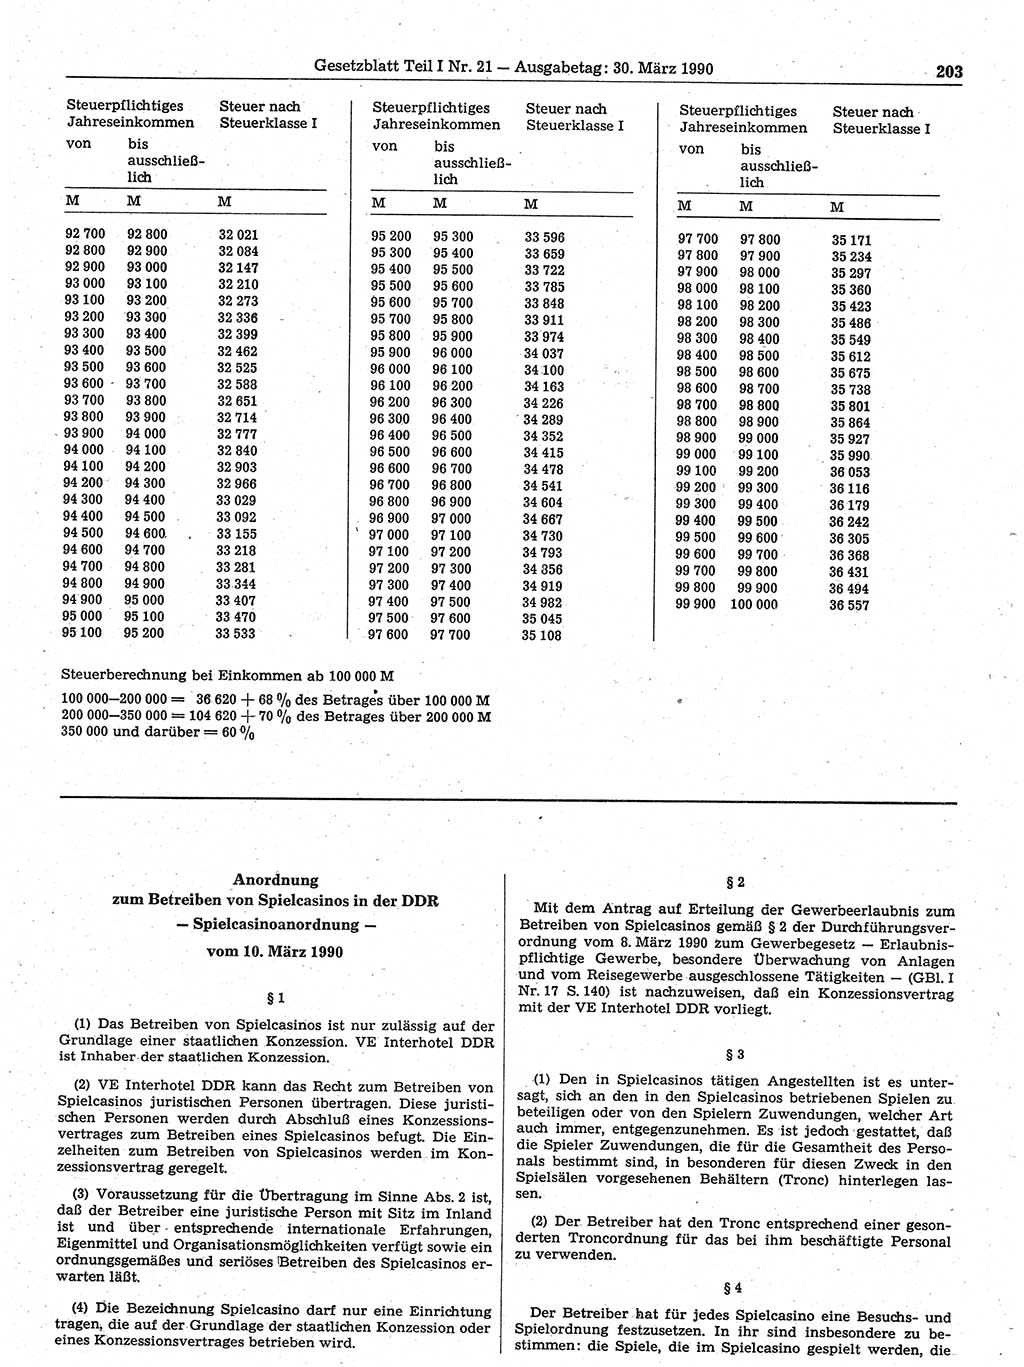 Gesetzblatt (GBl.) der Deutschen Demokratischen Republik (DDR) Teil Ⅰ 1990, Seite 203 (GBl. DDR Ⅰ 1990, S. 203)